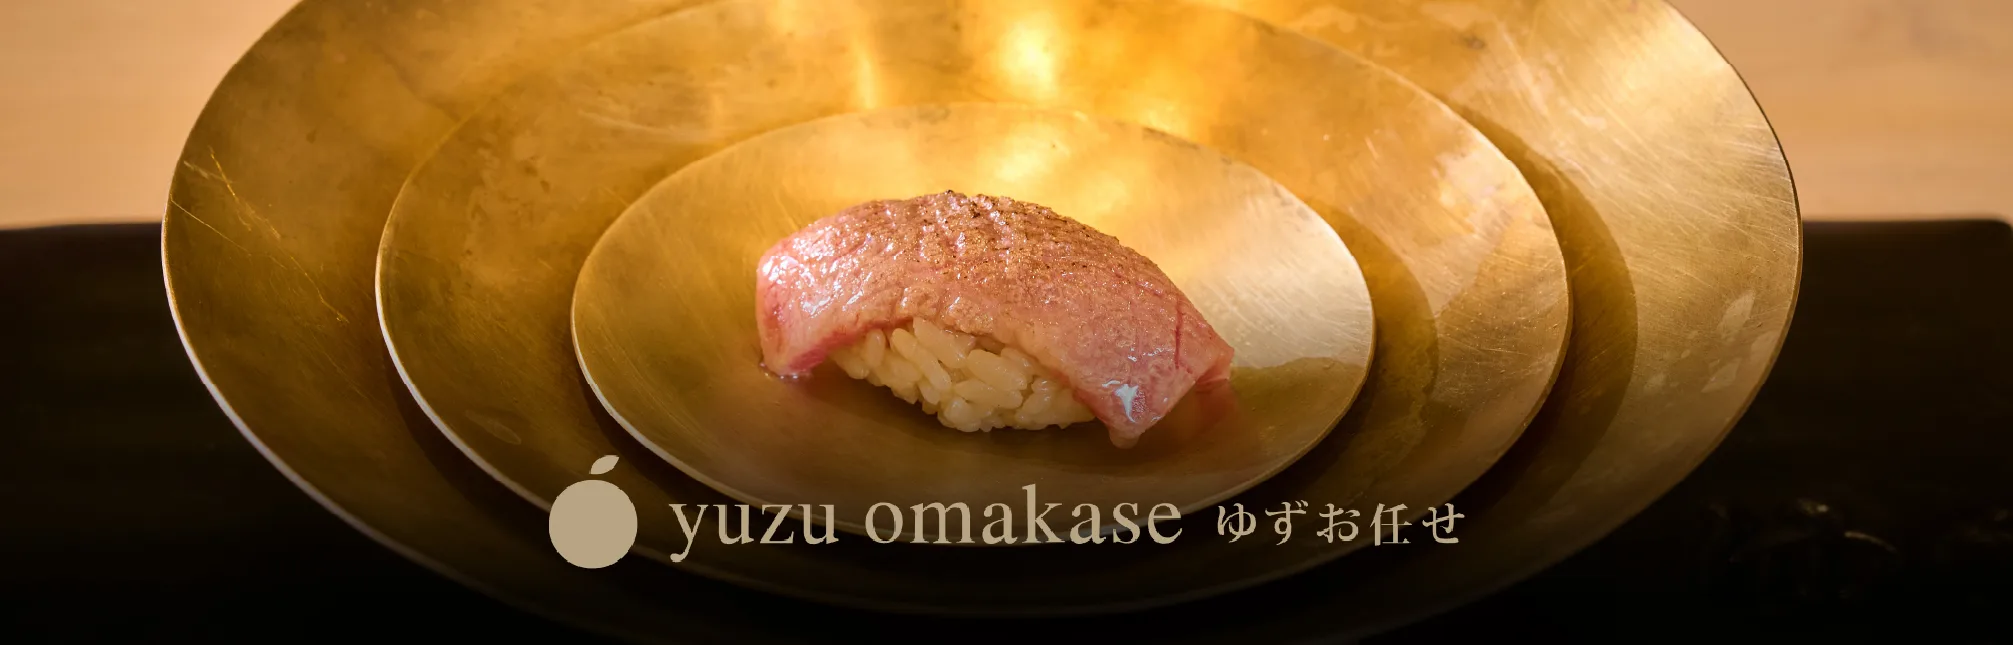 Omakase and Sushi